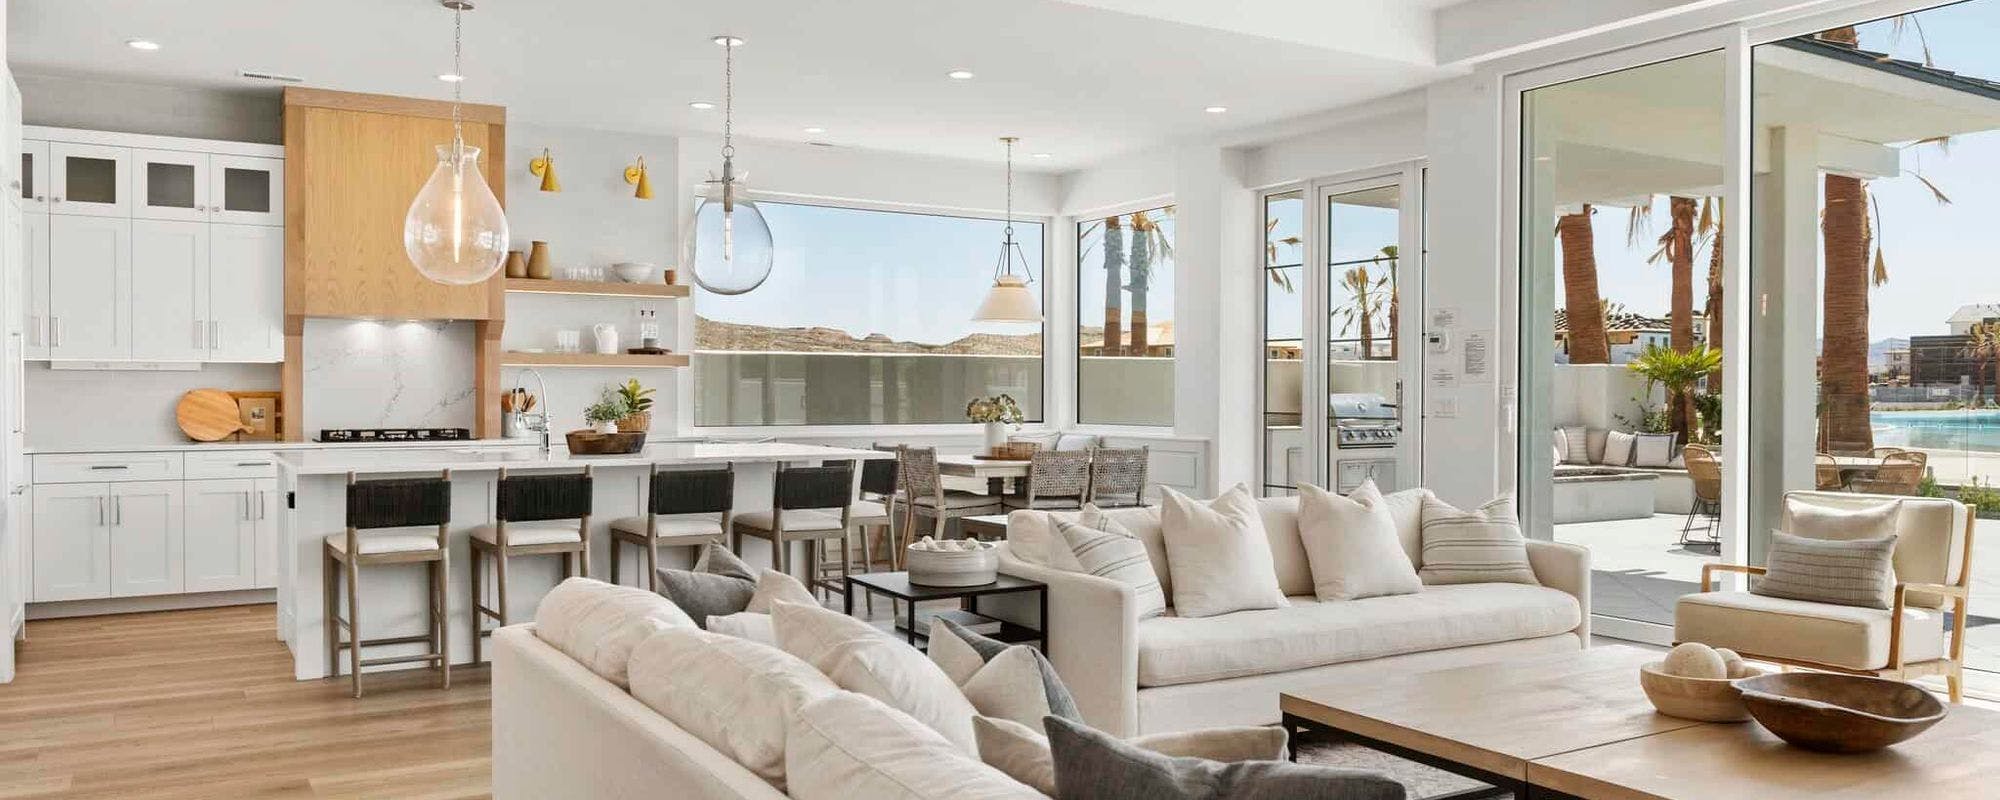 Luxury indoor living space at St. George Utah vacation rental